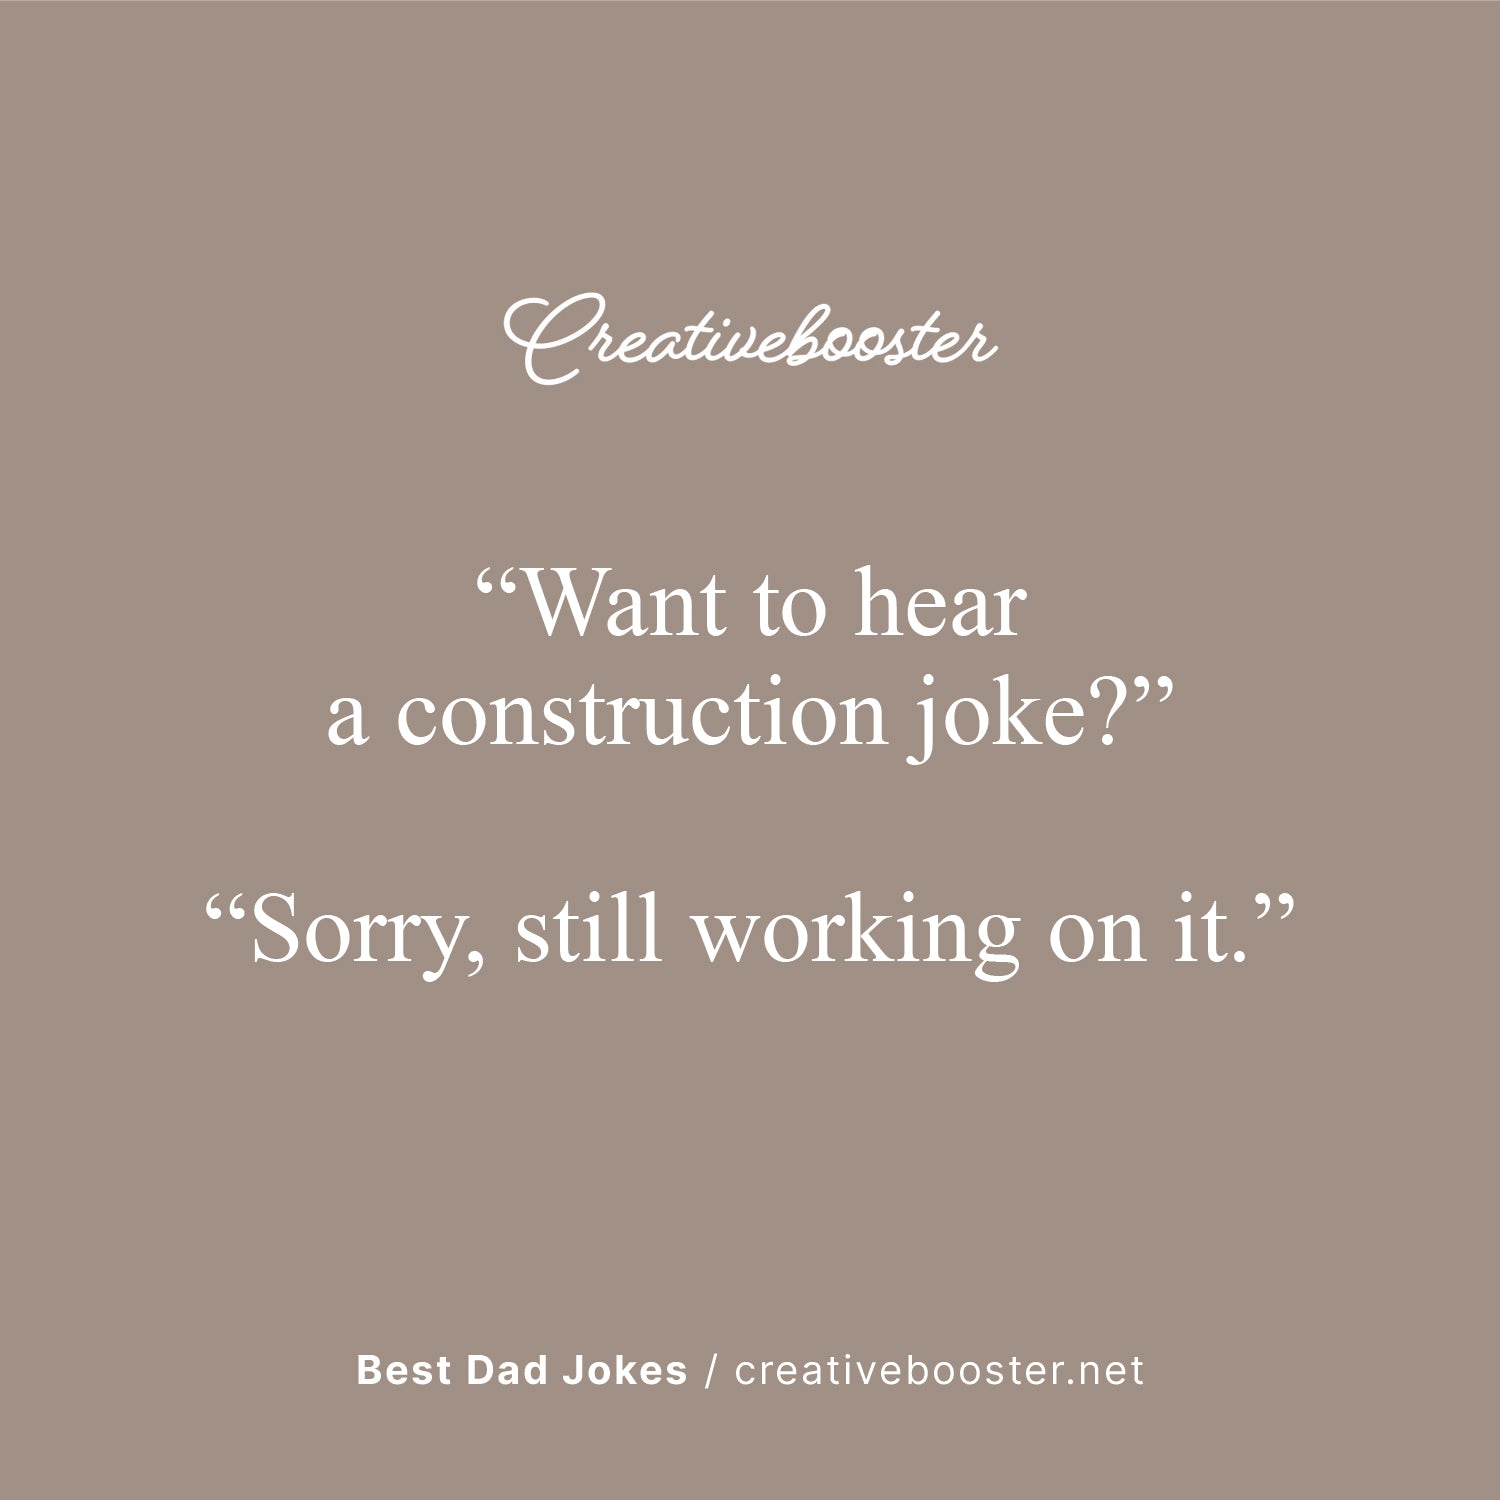 Best Terrible Dad Jokes